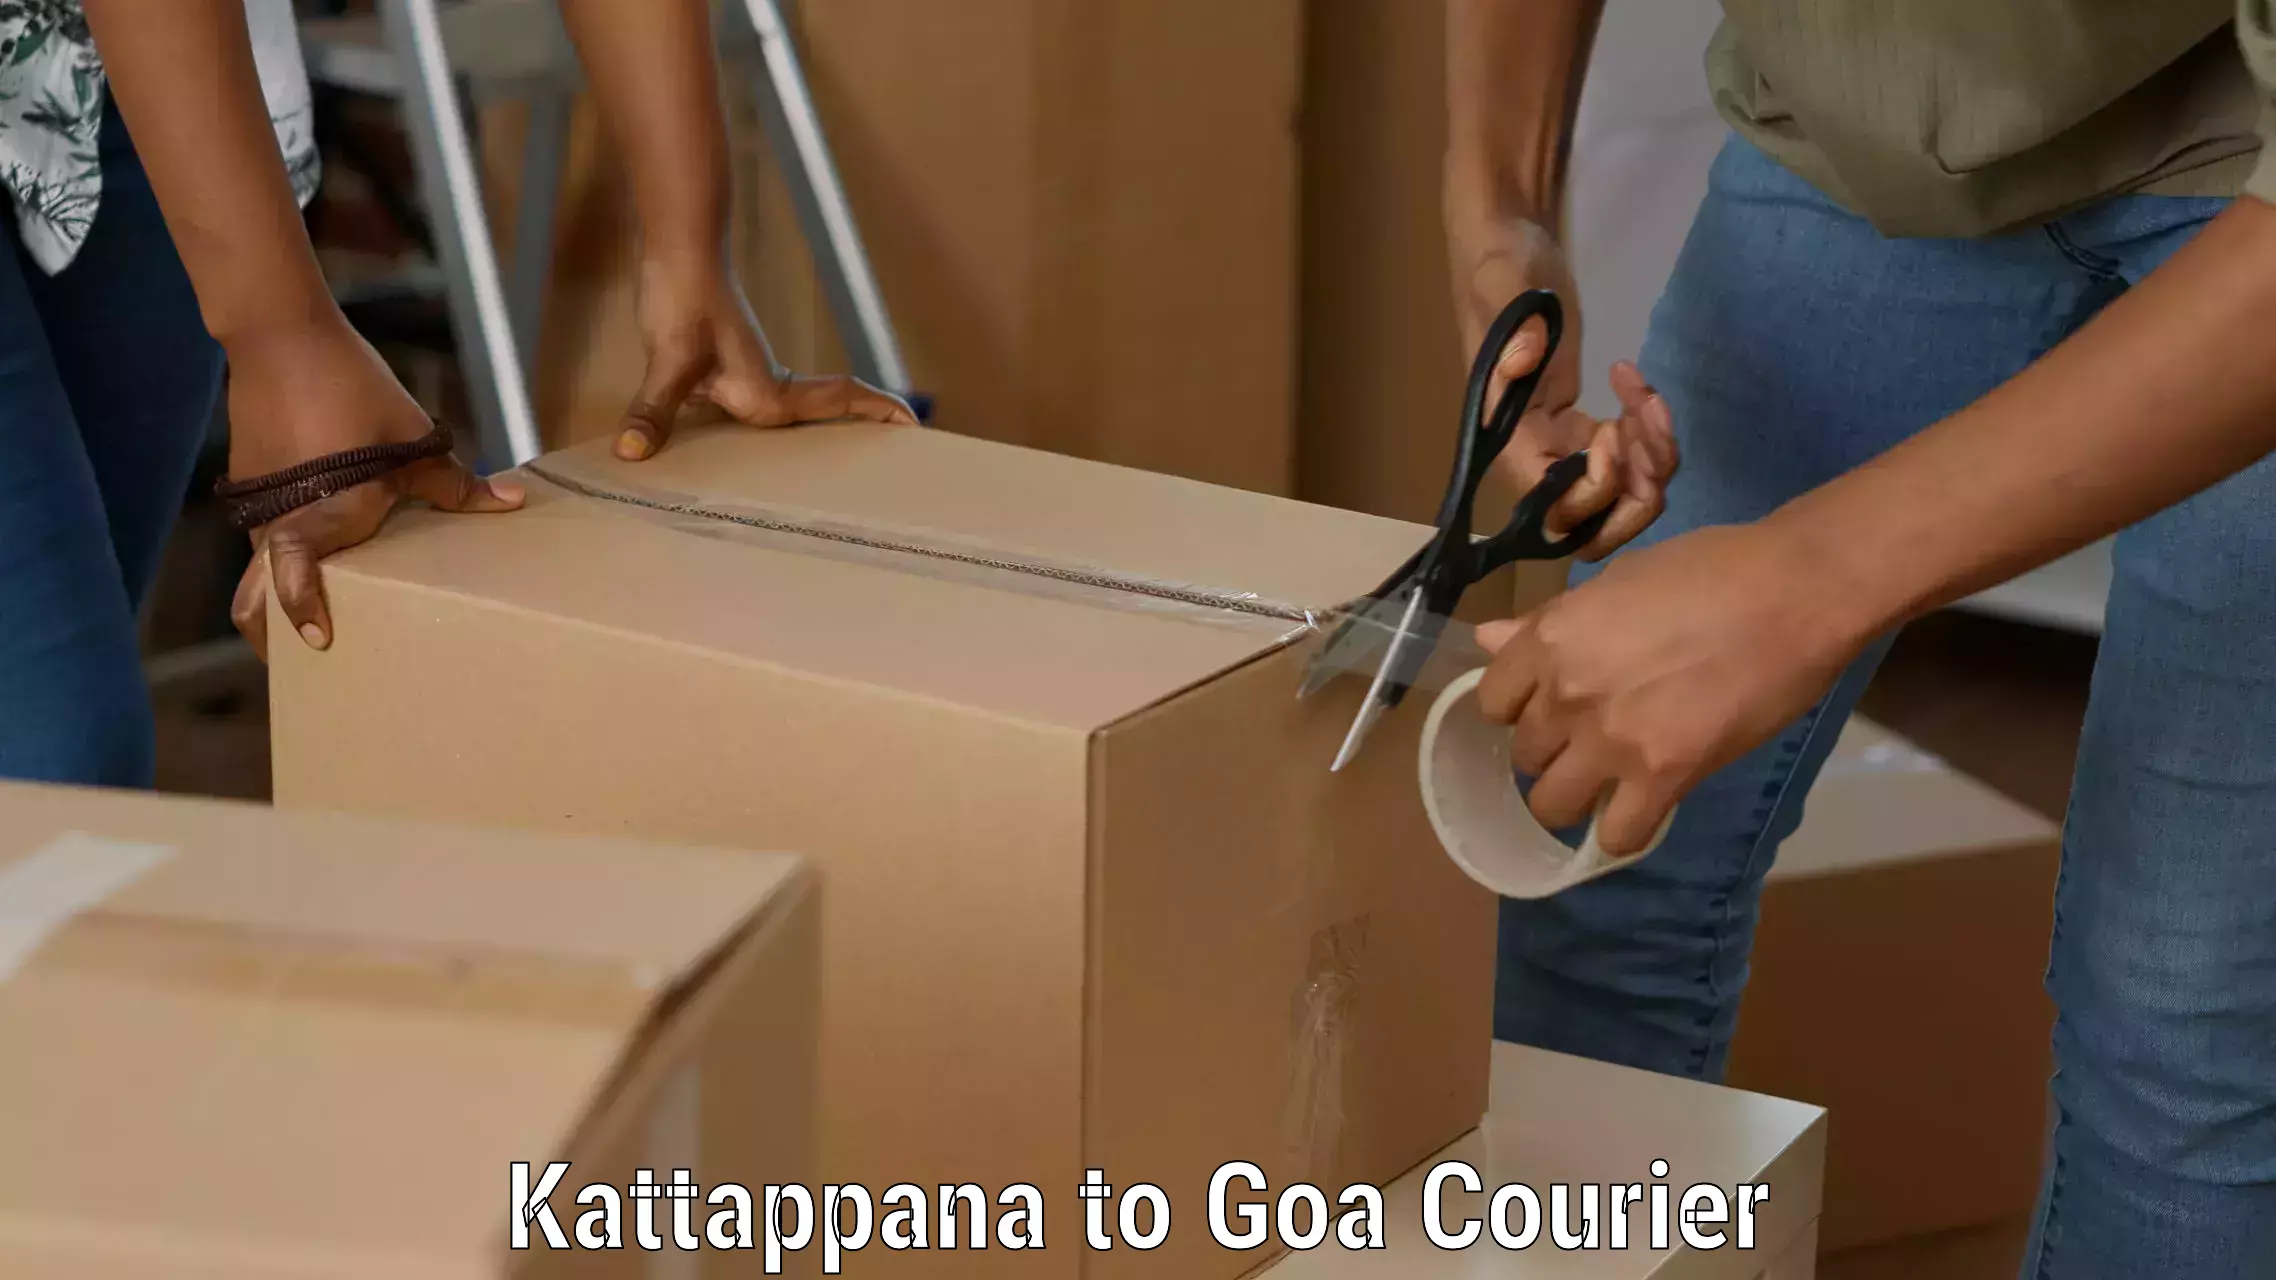 Professional courier handling Kattappana to Canacona